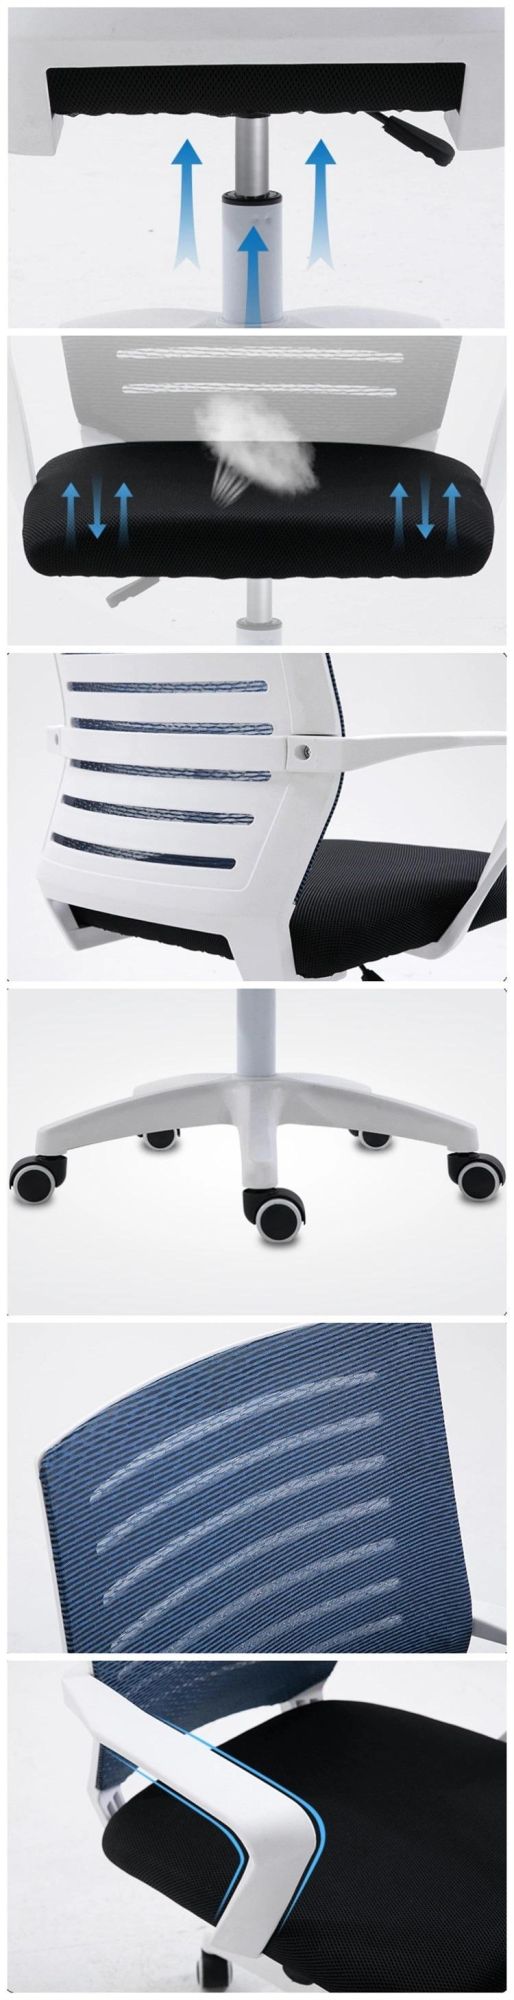 Ergonomic Swivel Wheel Office Furniture Modern Mesh Back Office Chair